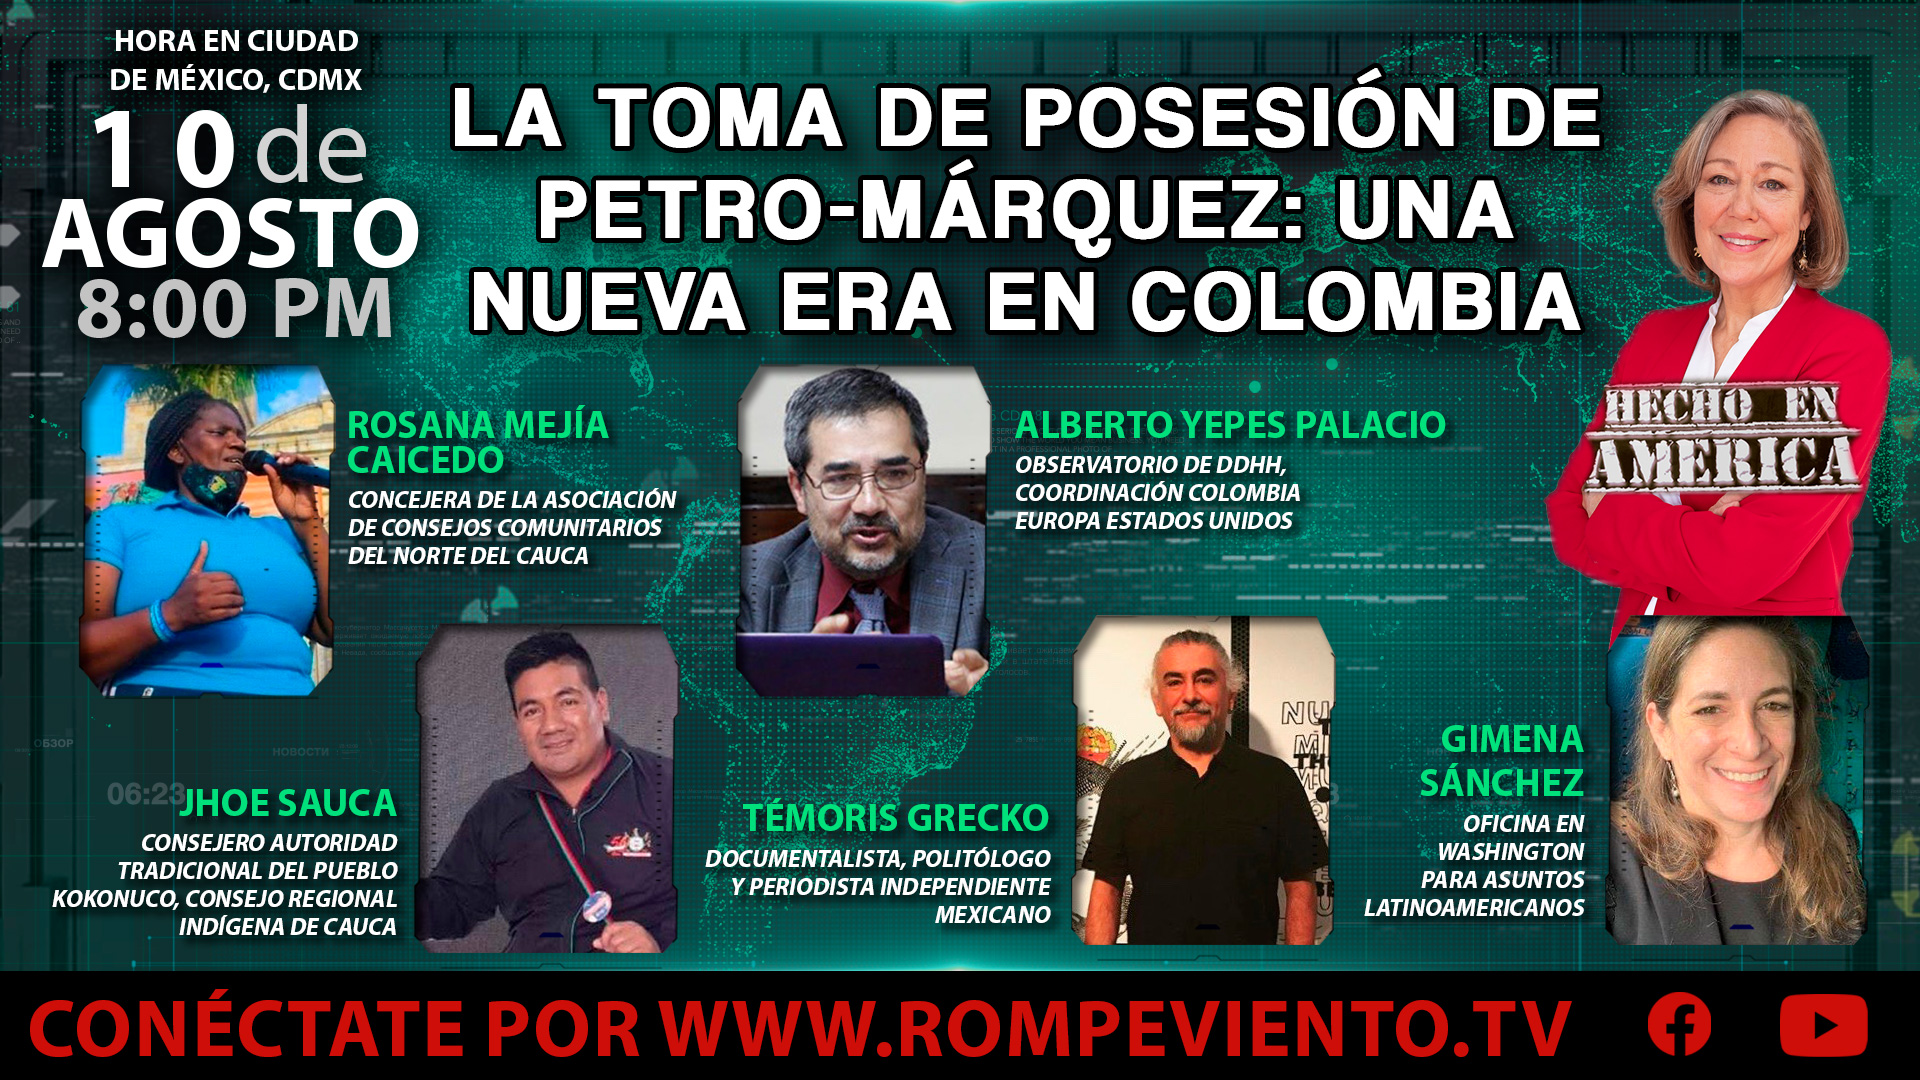 La toma de posesión de Petro-Márquez: Una nueva era en Colombia - Hecho en América